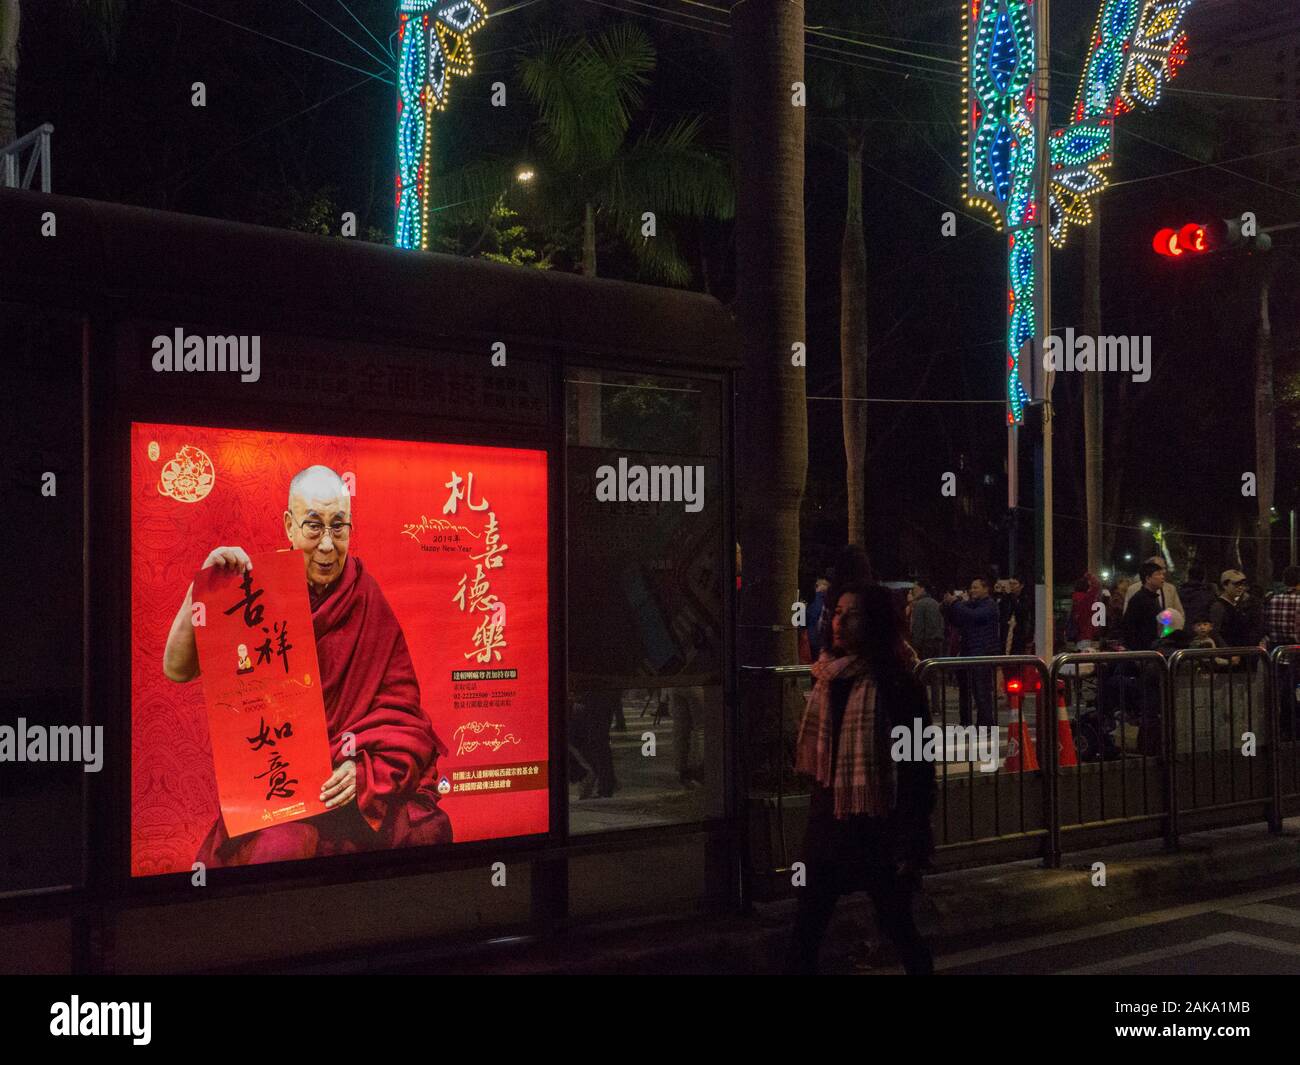 Taipei Lantern Festival: Im Gegensatz zu vergangenen Themen, die sich meist an die 12 Tierzeichen des chinesischen Zodiakals anlehnen Stockfoto